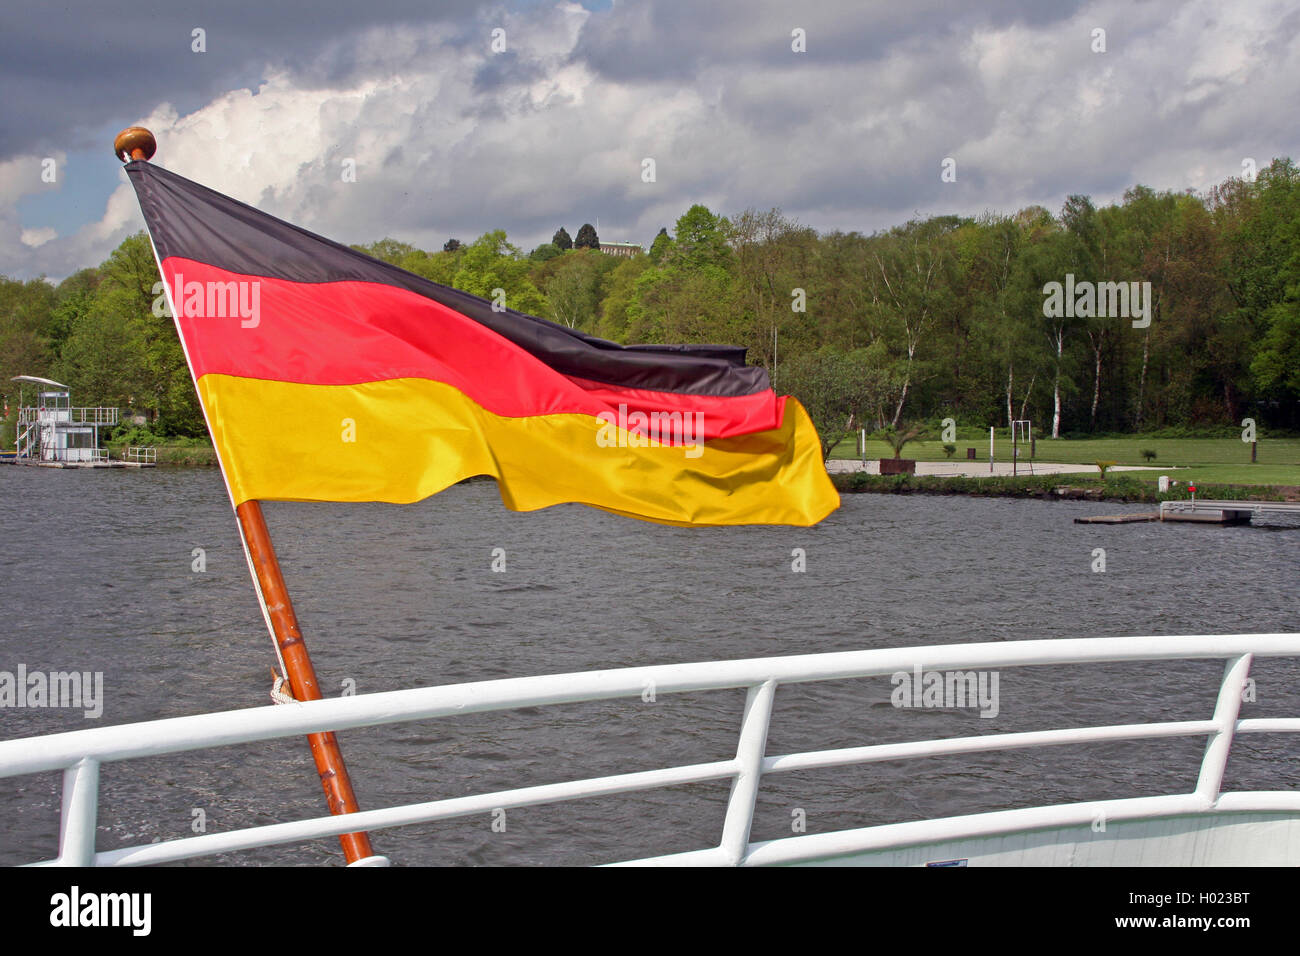 Bandera Alemana en la proa de un barco de excursión, Alemania Foto de stock